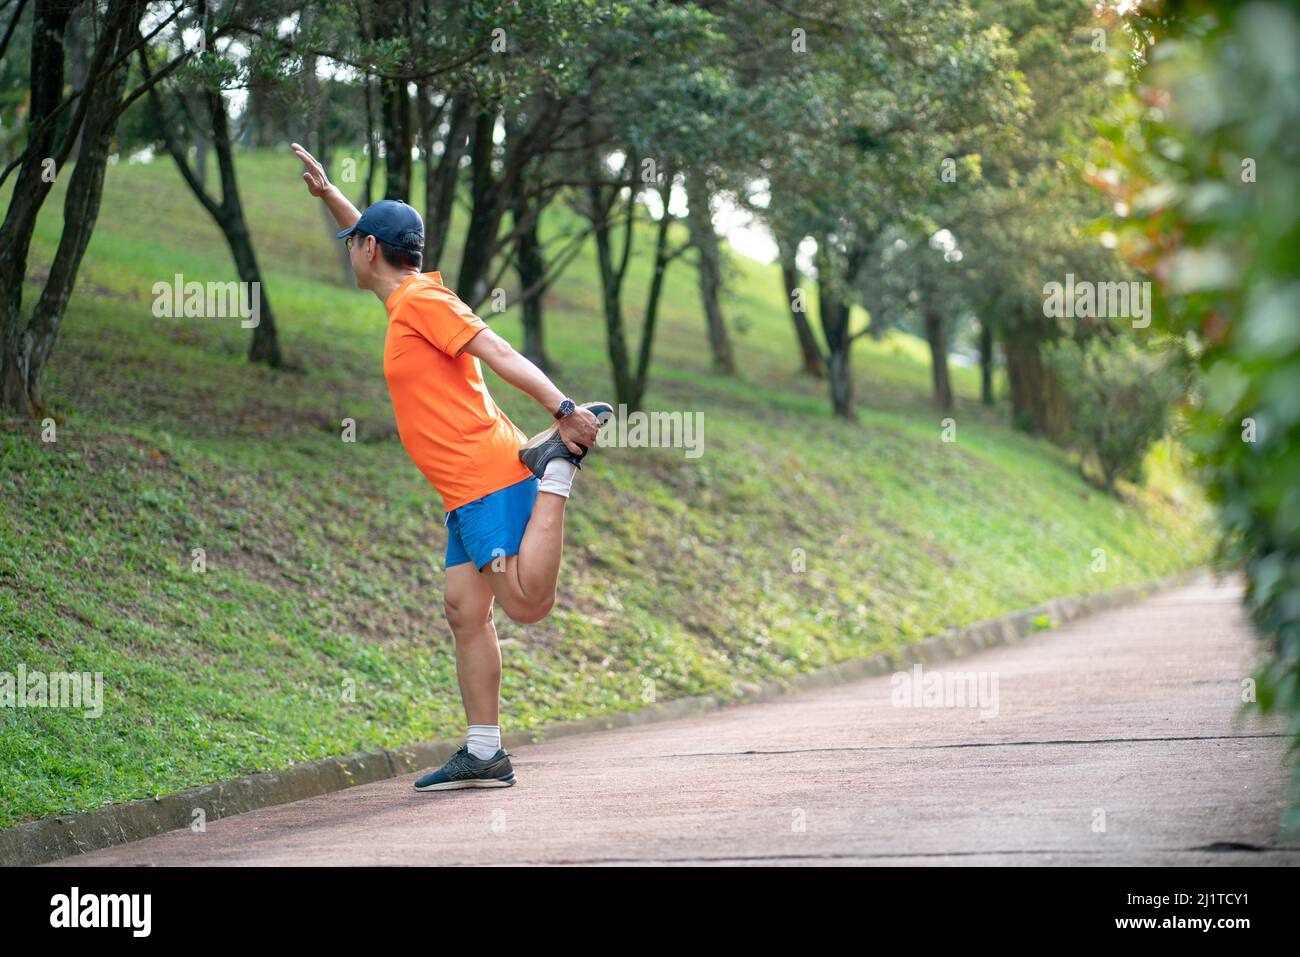 Homme athlète en train de faire de l'entraînement. Parc Geeen nature et randonnée de jogging arrière-plan Banque D'Images